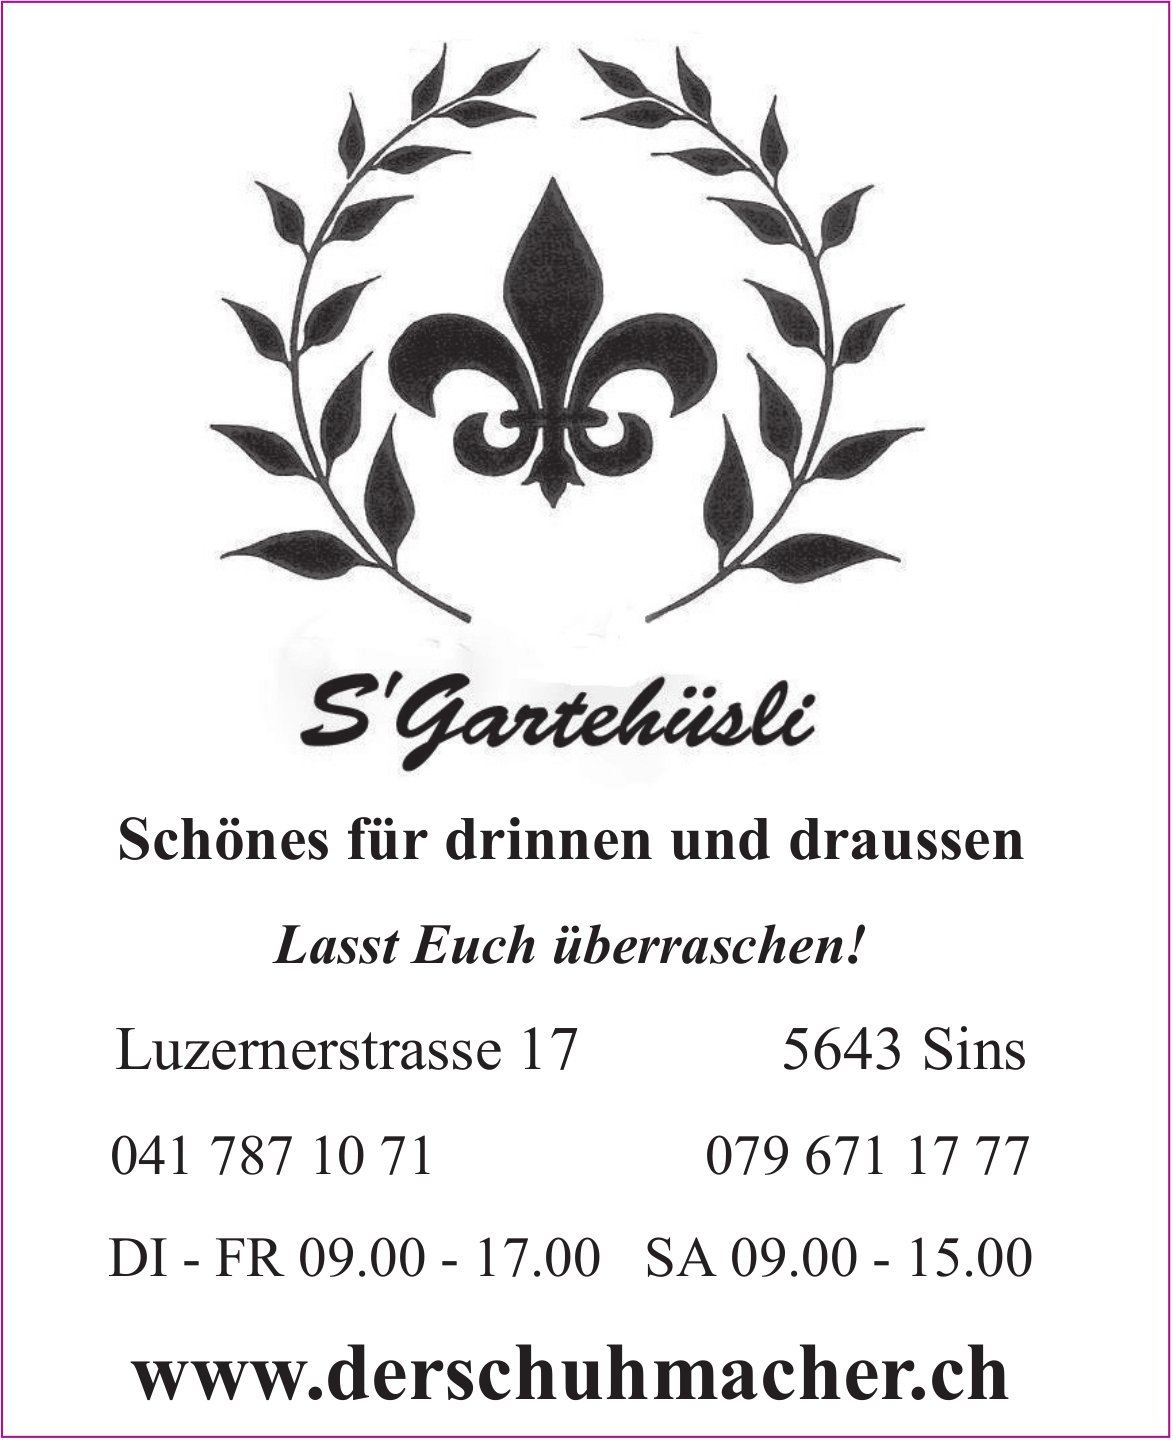 S'Gantehüsle, Sins - www.derschuhmacher.ch